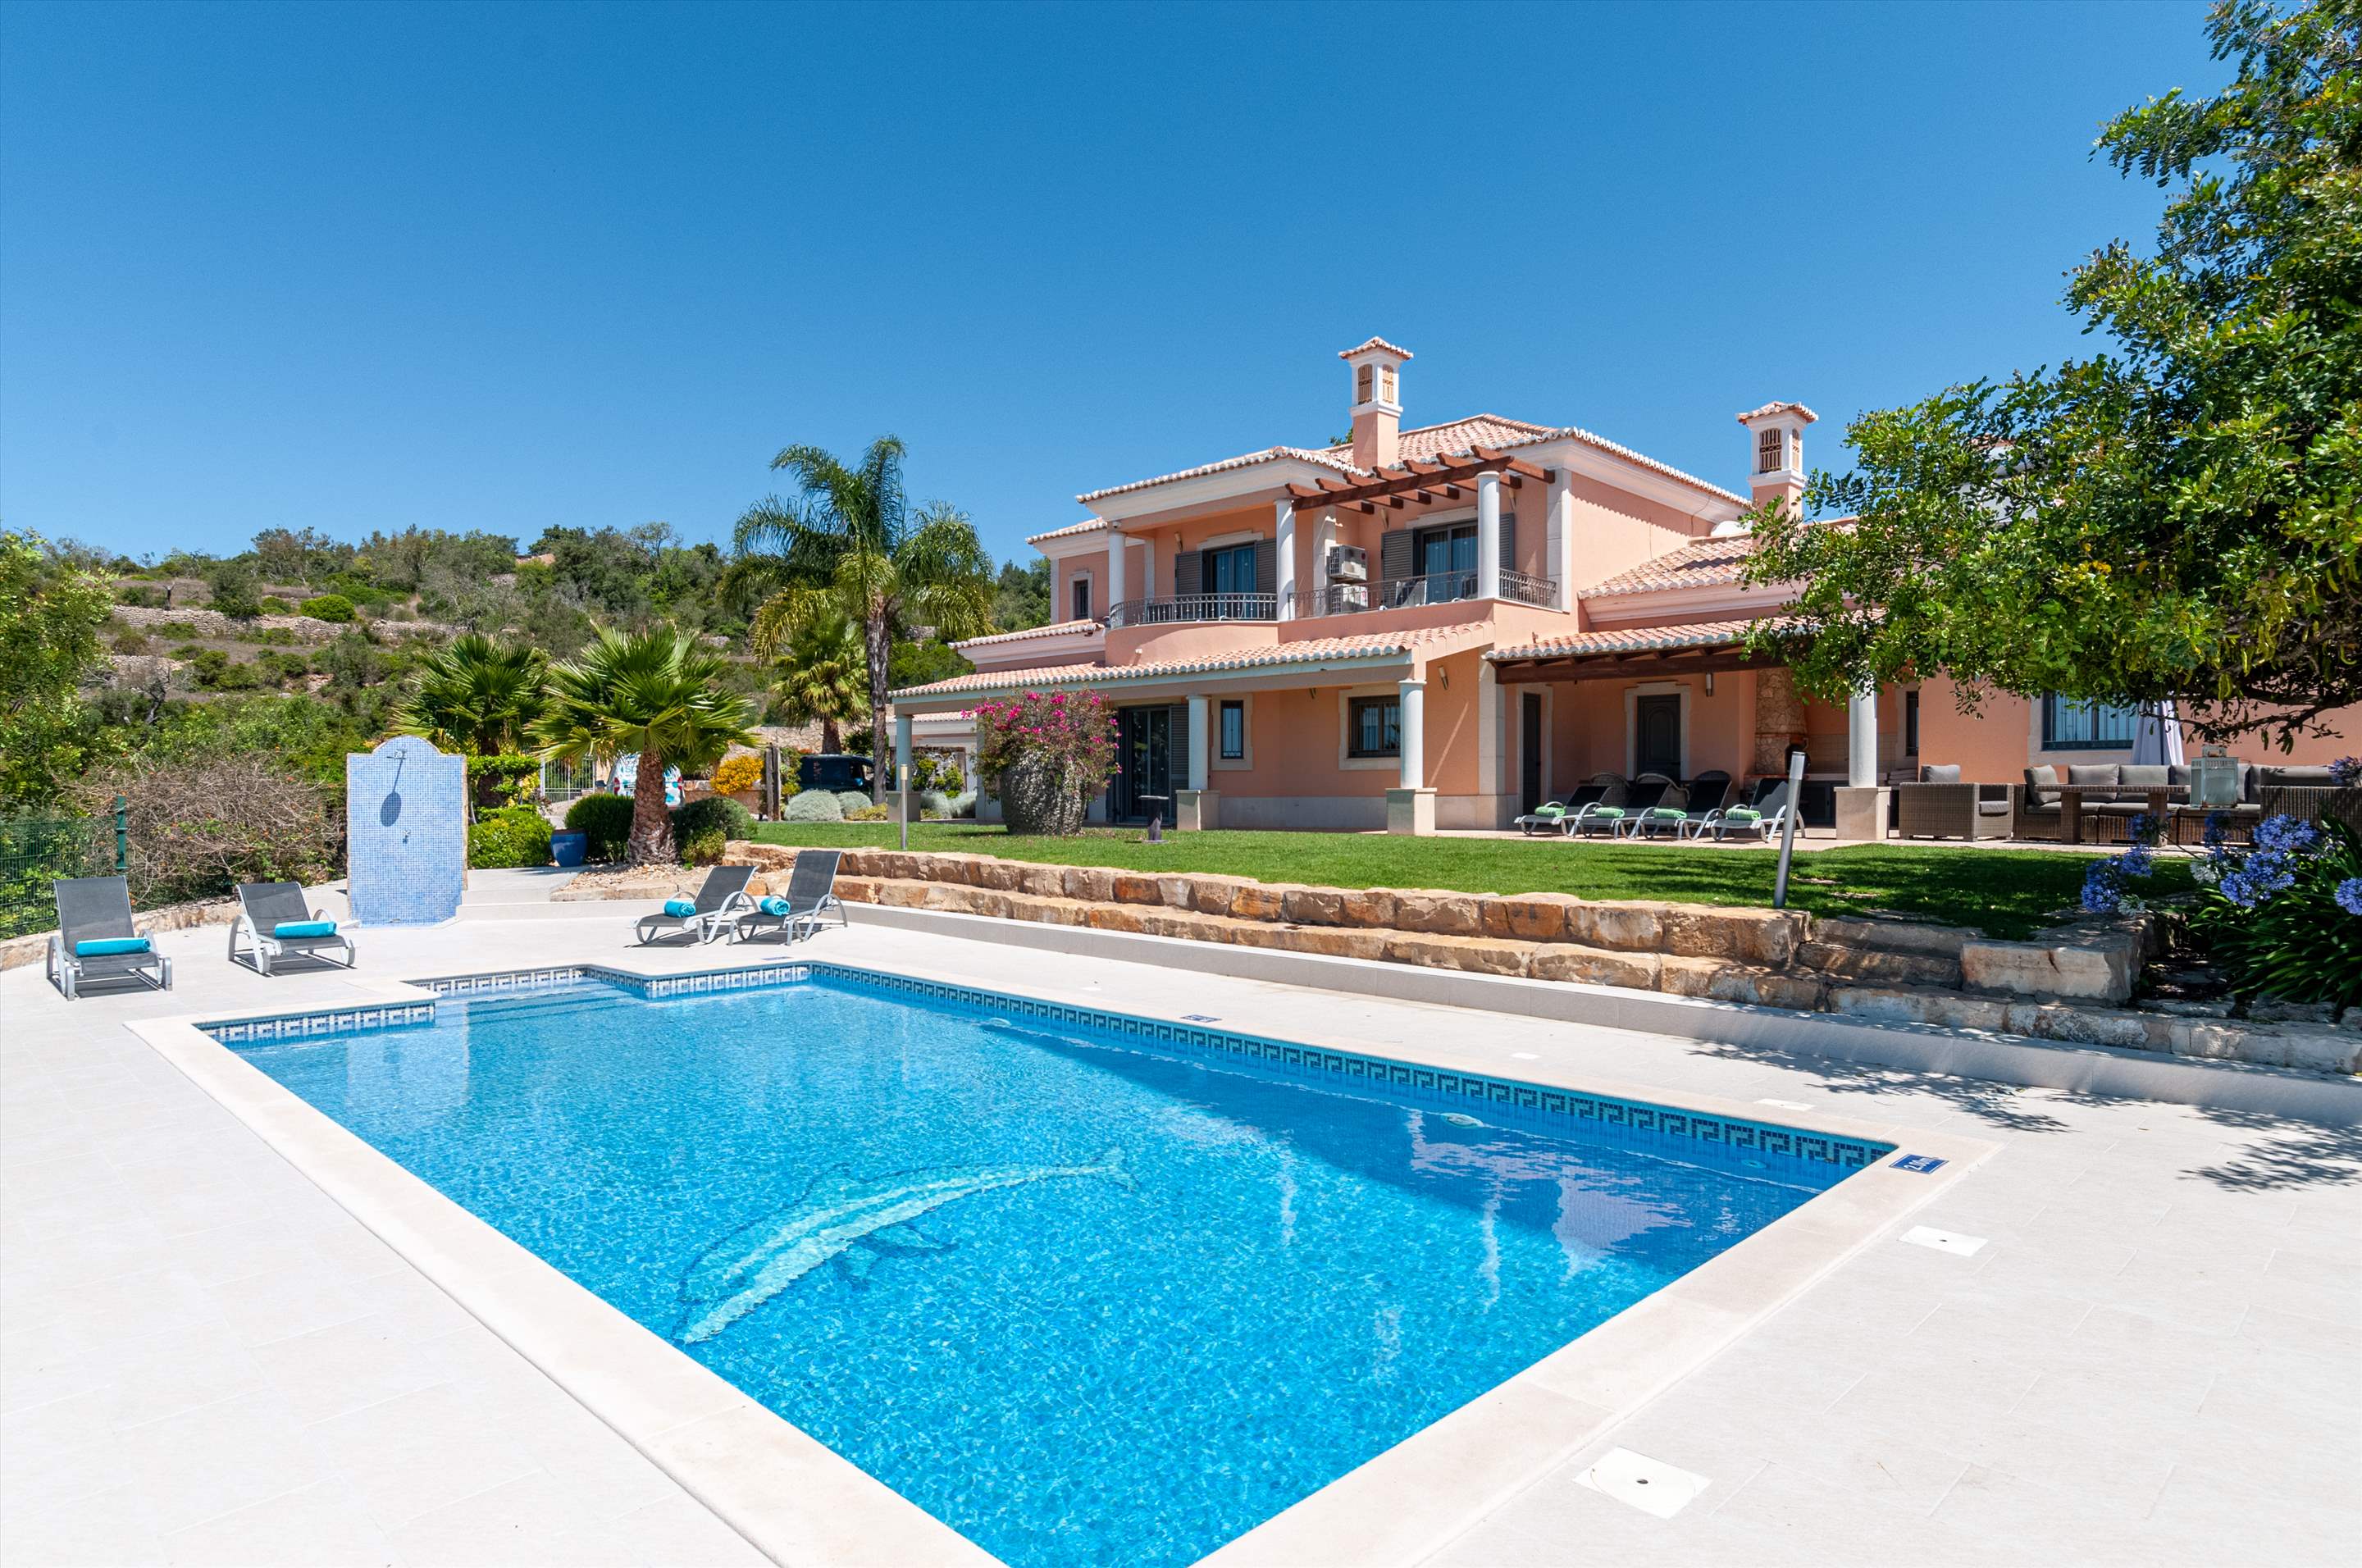 Casa da Pena Branca, Four Bedrooms, 8 Persons occupancy, 4 bedroom villa in Algarve Countryside, Algarve Photo #1